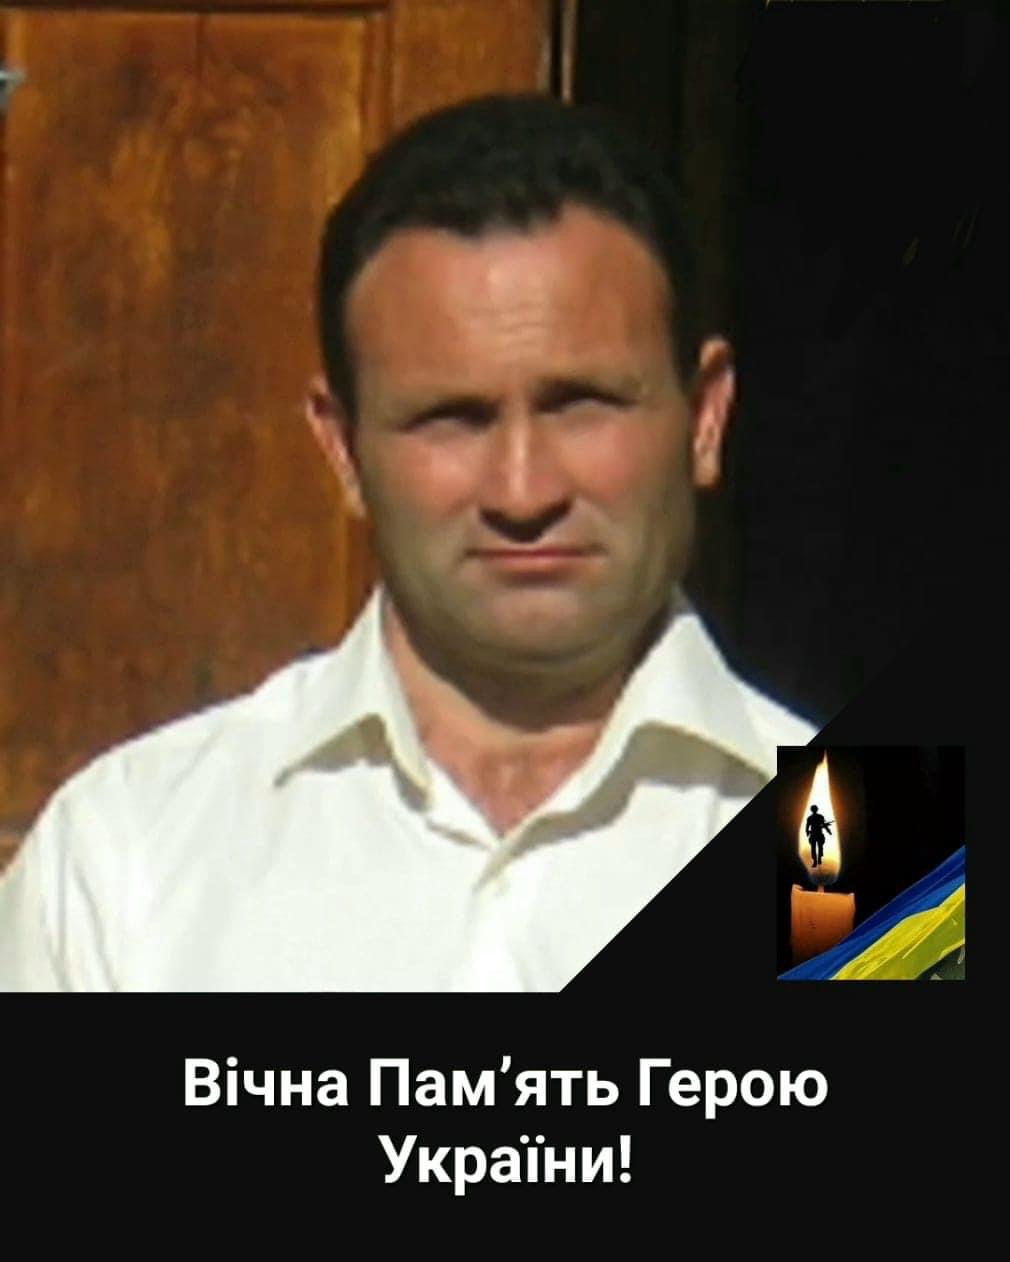 Под Бахмутом погиб бывший глава одного из сел Белгород-Днестровского района - будут прощаться с ним в Аккермане и на малой родине